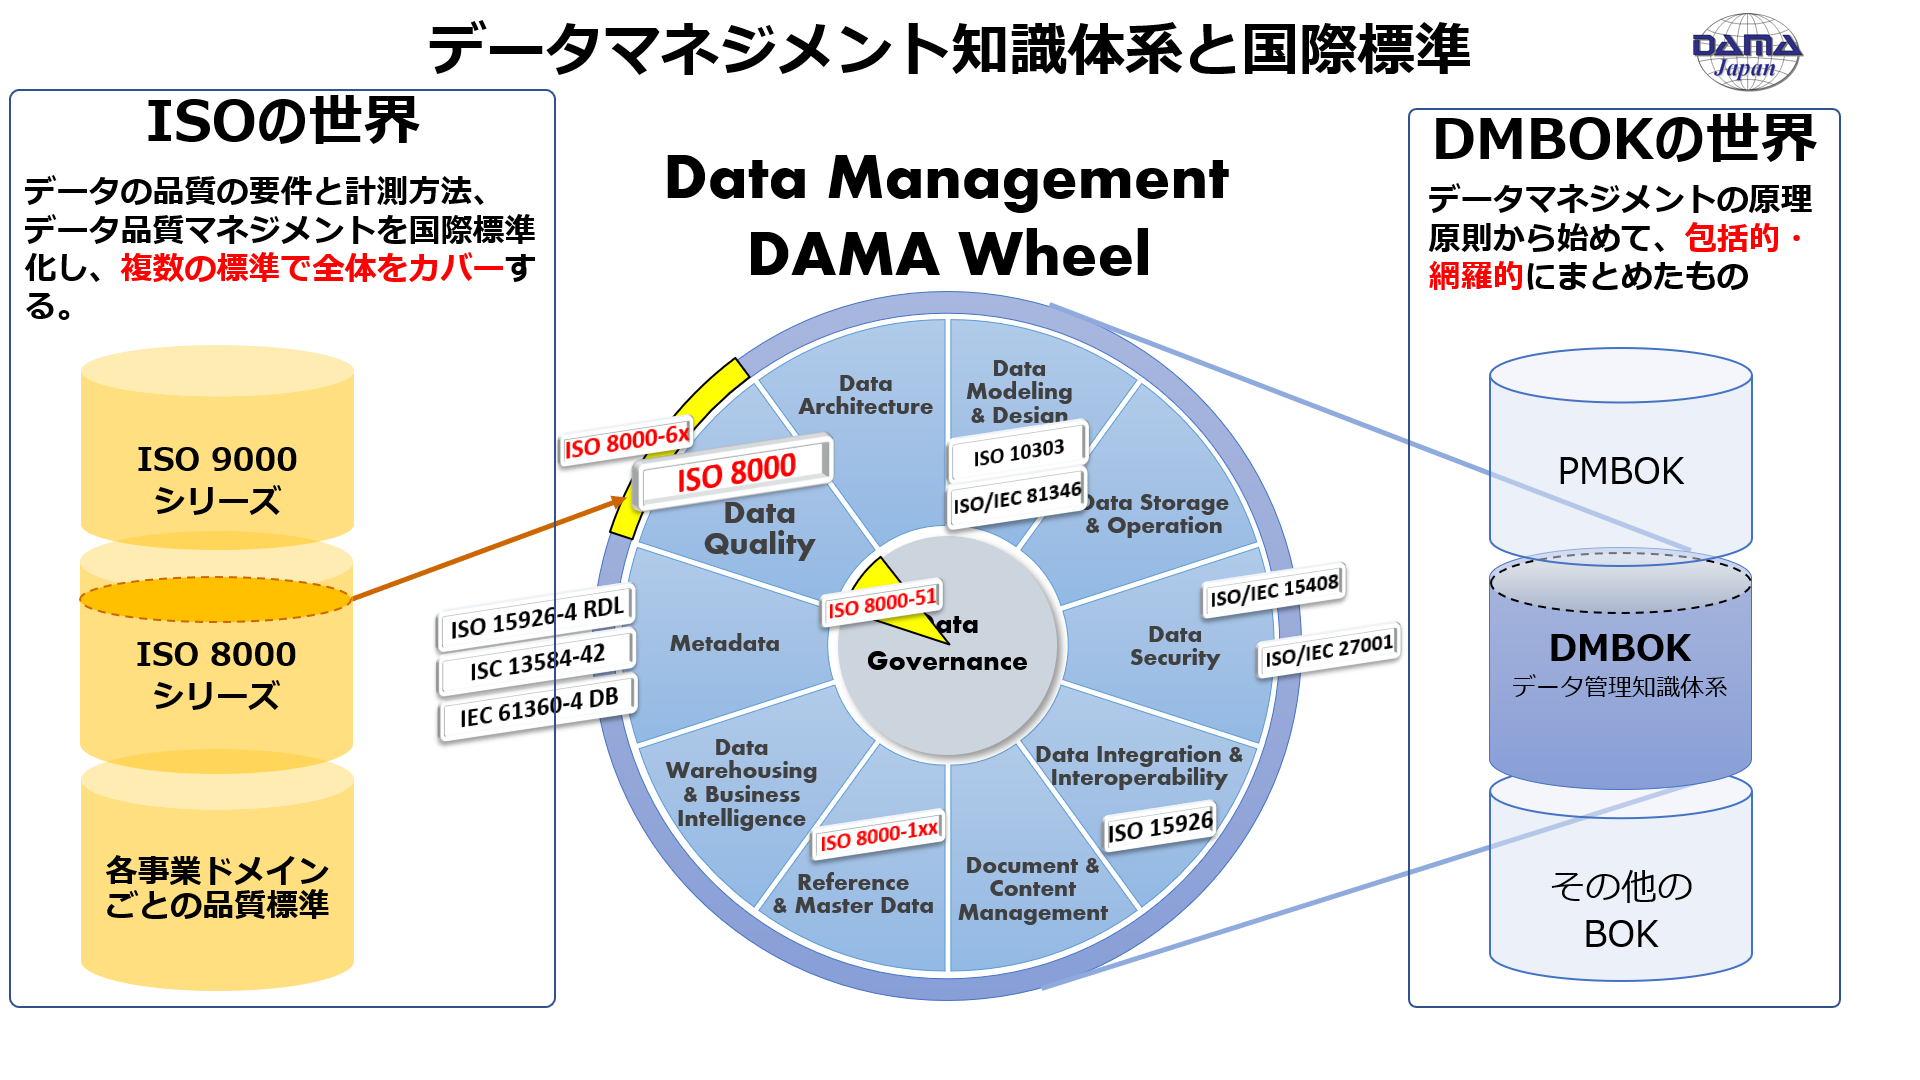 一般社団法人 データマネジメント協会 日本支部(DAMA Japan)